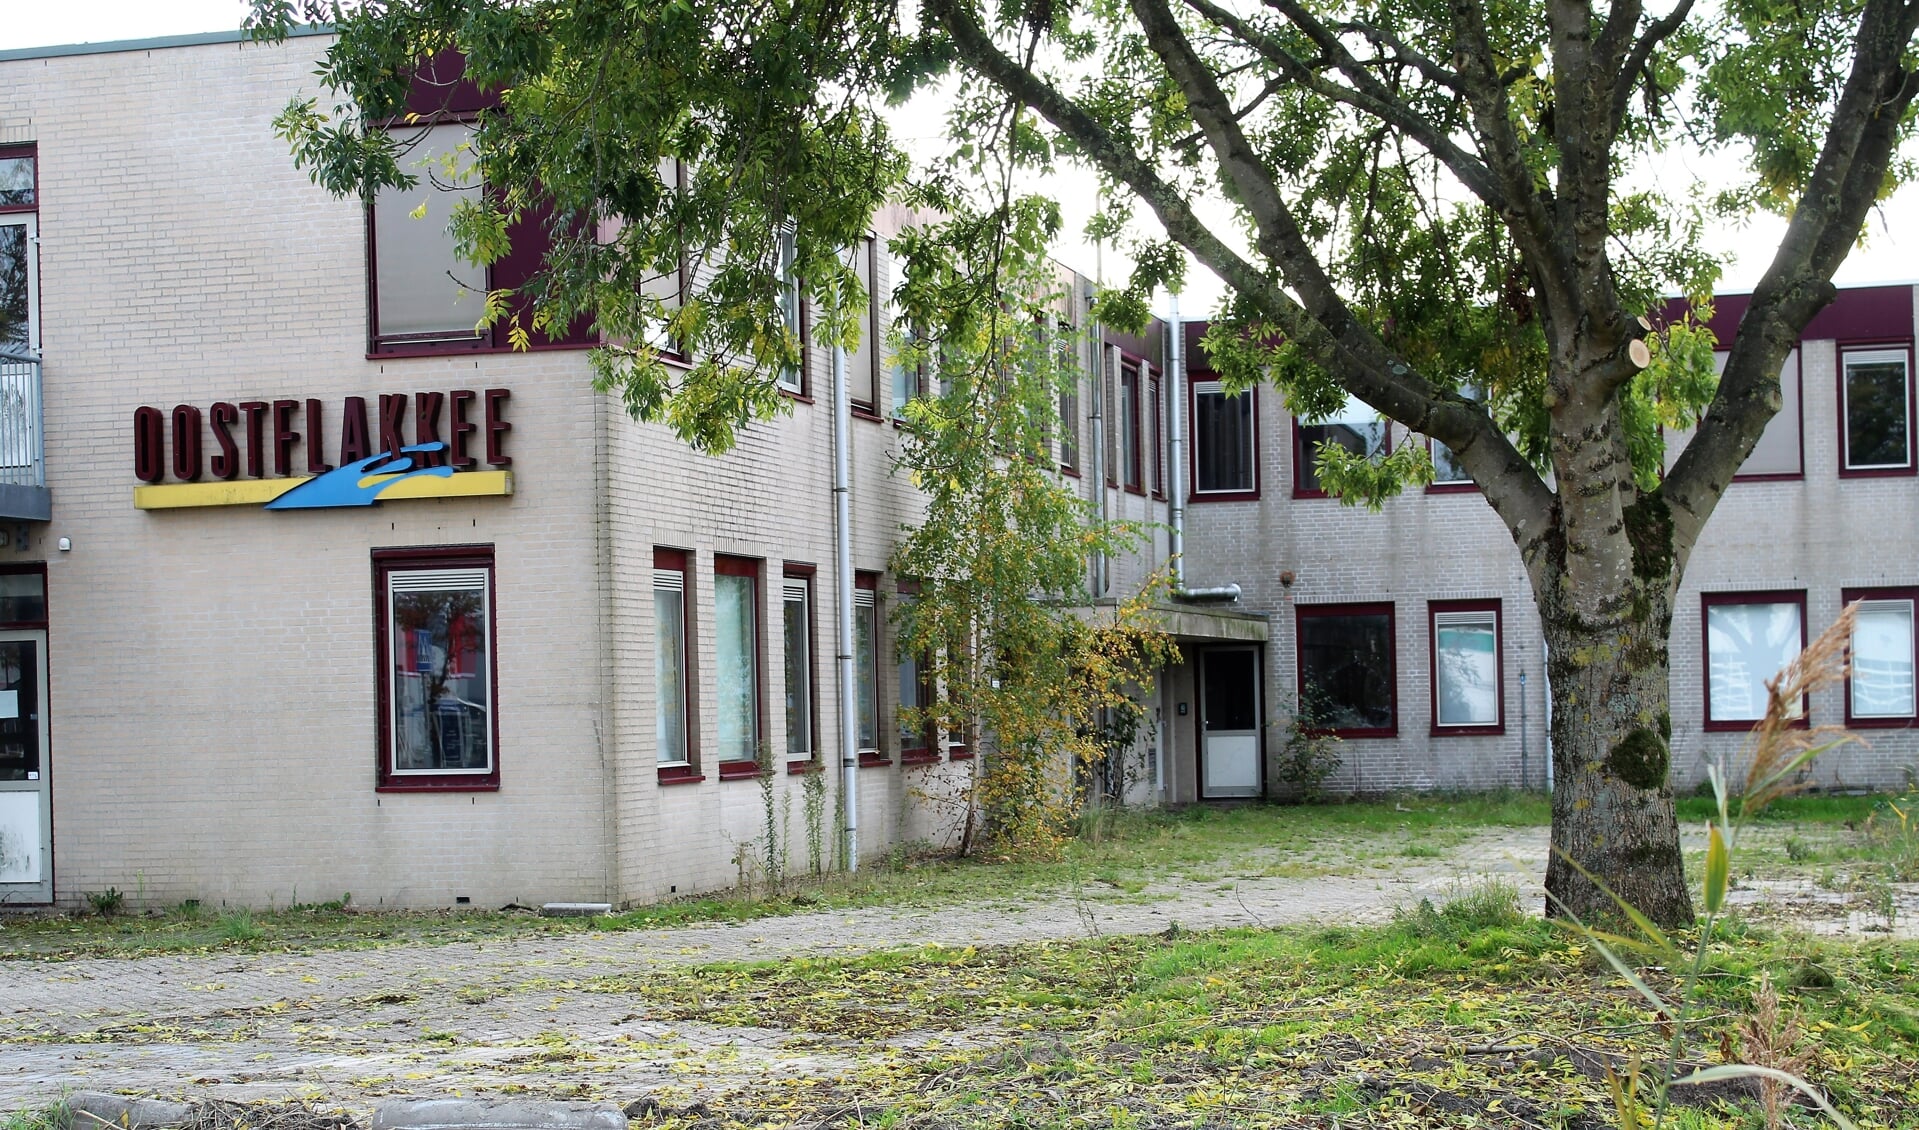 Het voormalige gemeentehuis van de gemeente Oostflakkee in Oude-Tonge staat te verpauperen (Foto: Mirjam Terhoeve).